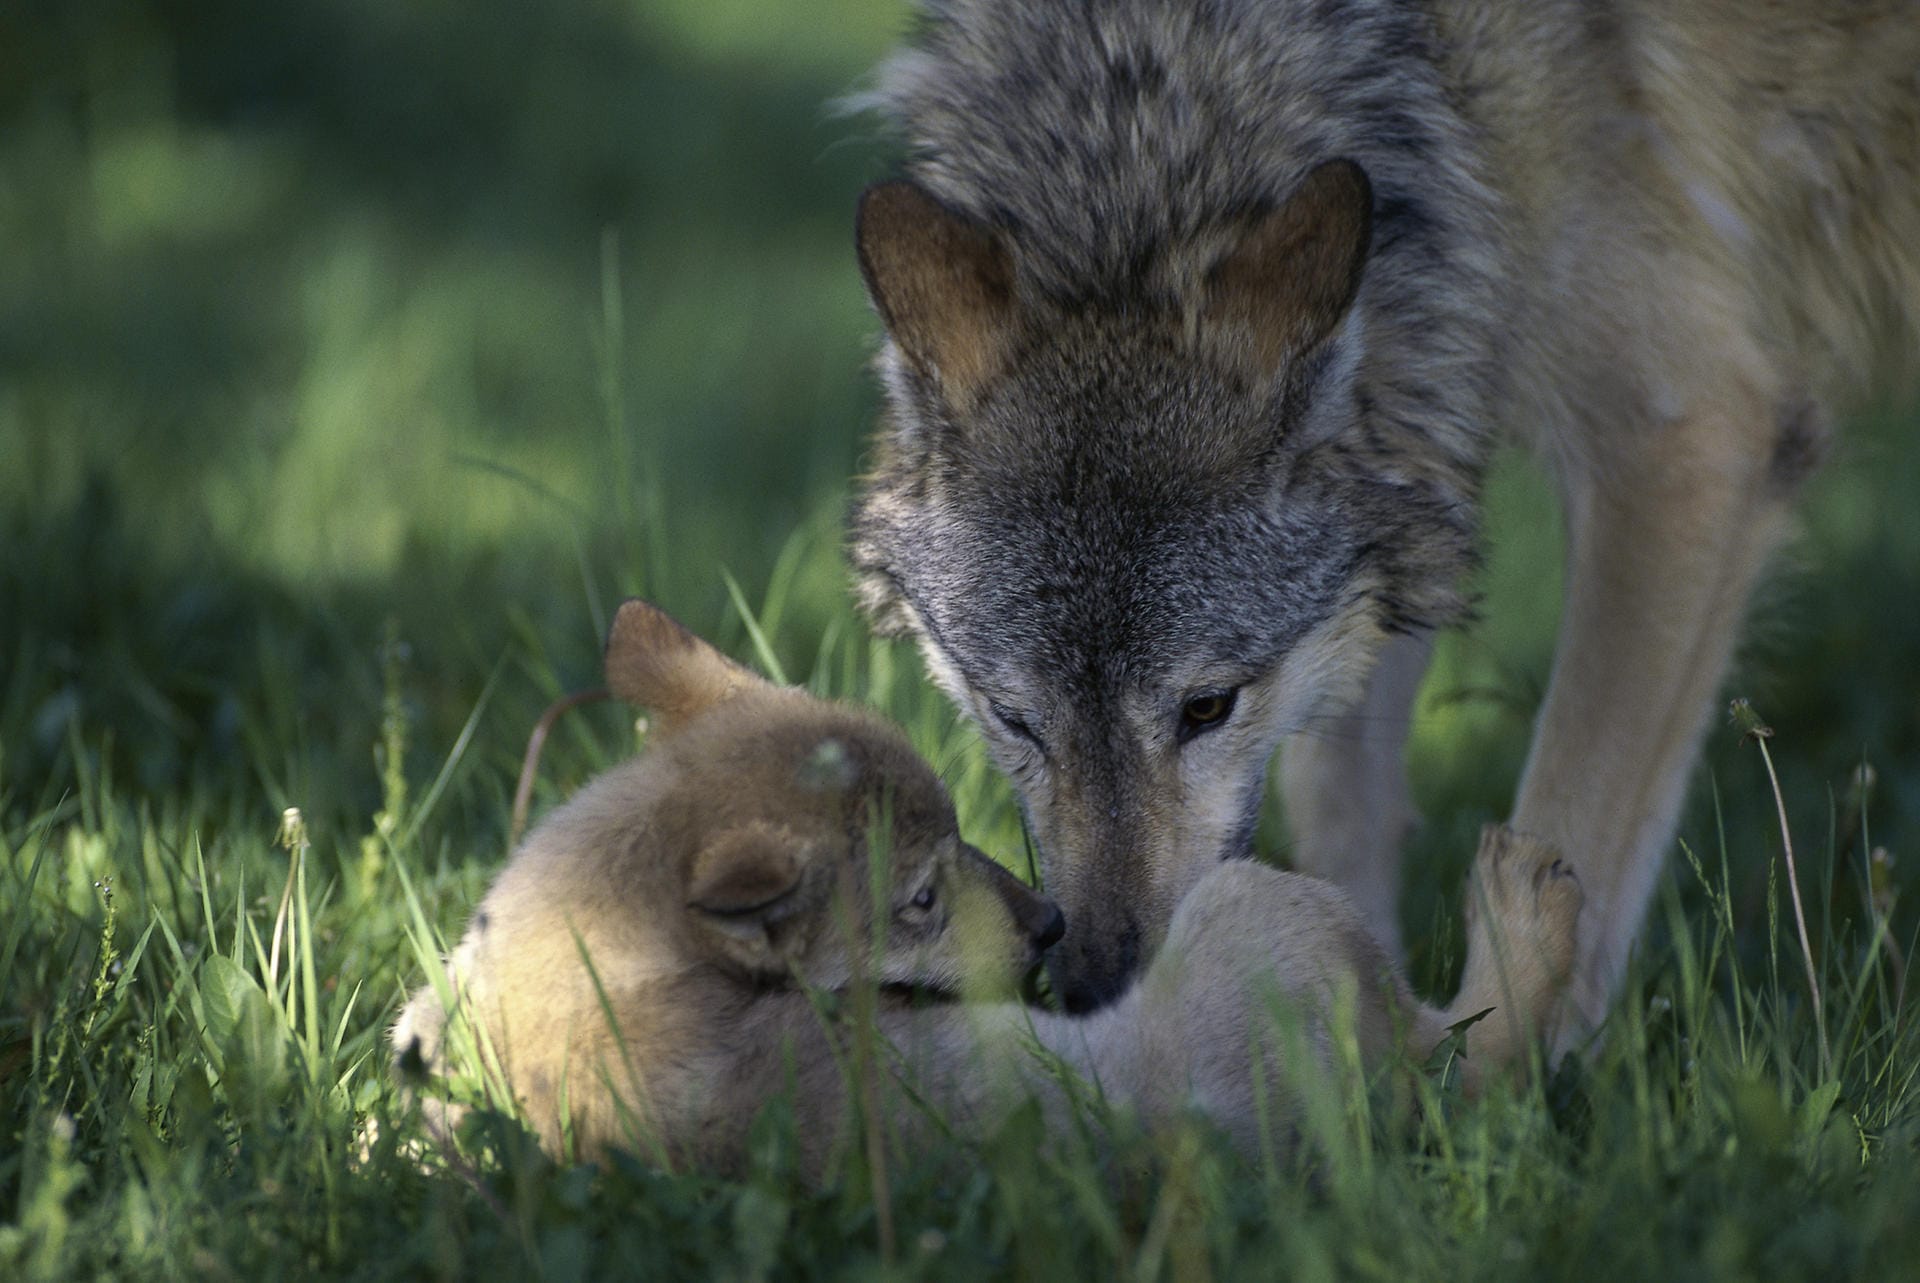 In Deutschland paaren sich Wölfe wieder und werfen Junge. So sind innerhalb von rund 15 Jahren etwa 46 Rudel entstanden.